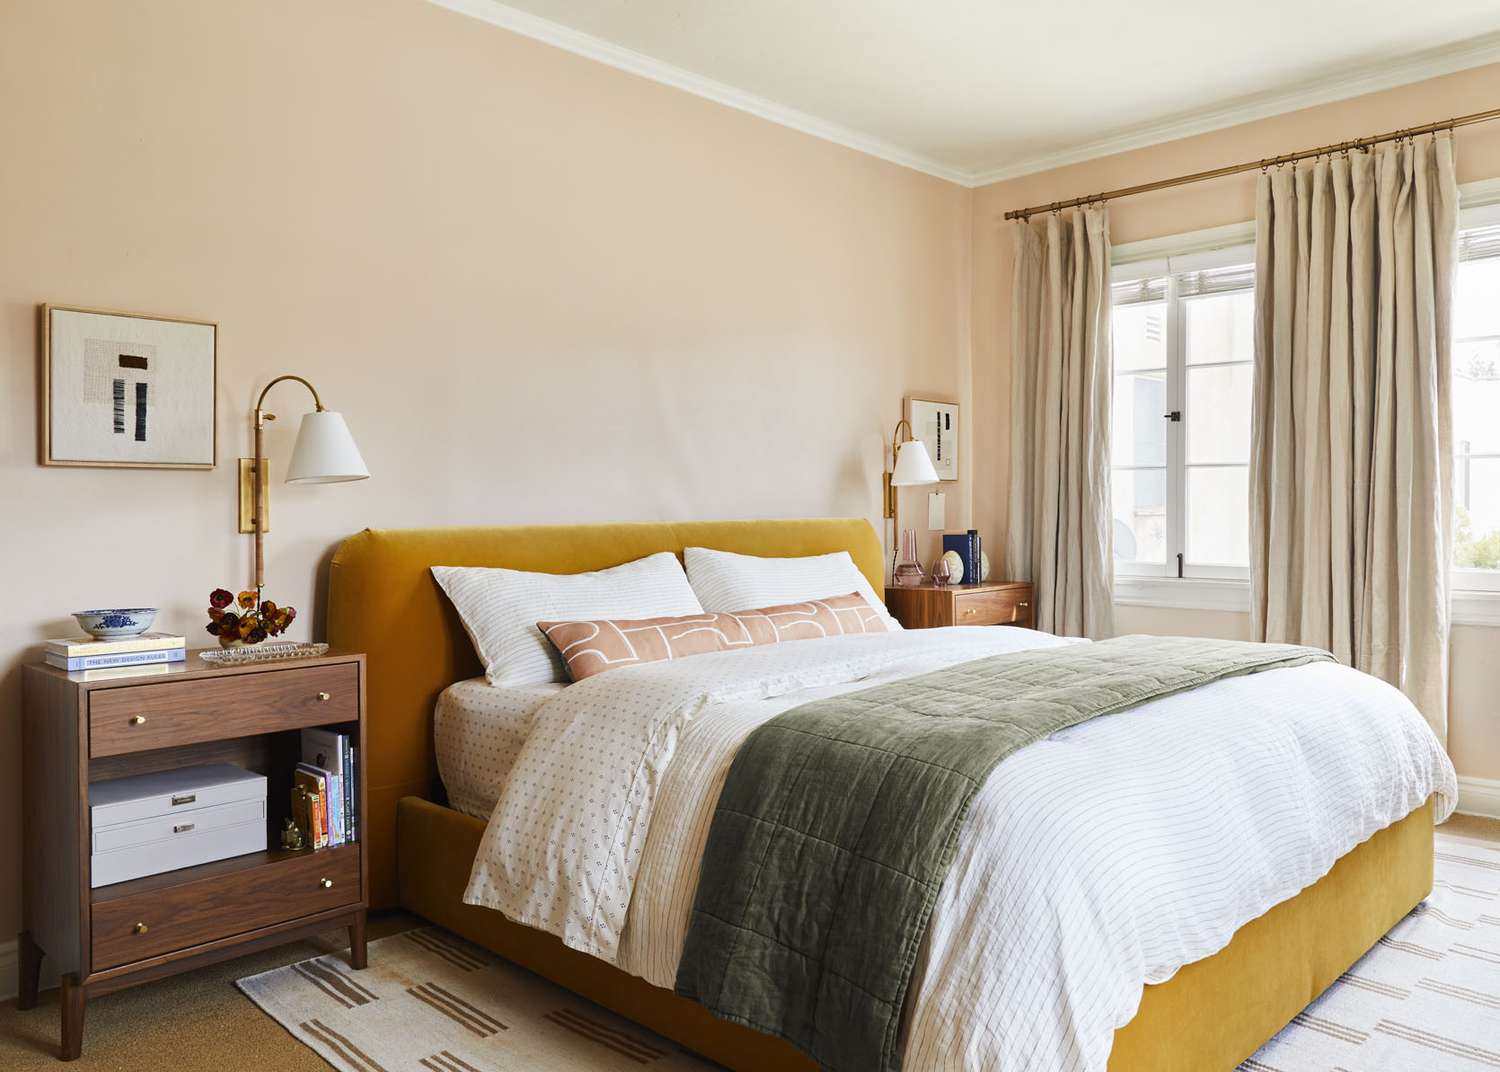 Ein senfgelbes Bett lehnt an einer sanften pfirsichfarbenen Wand